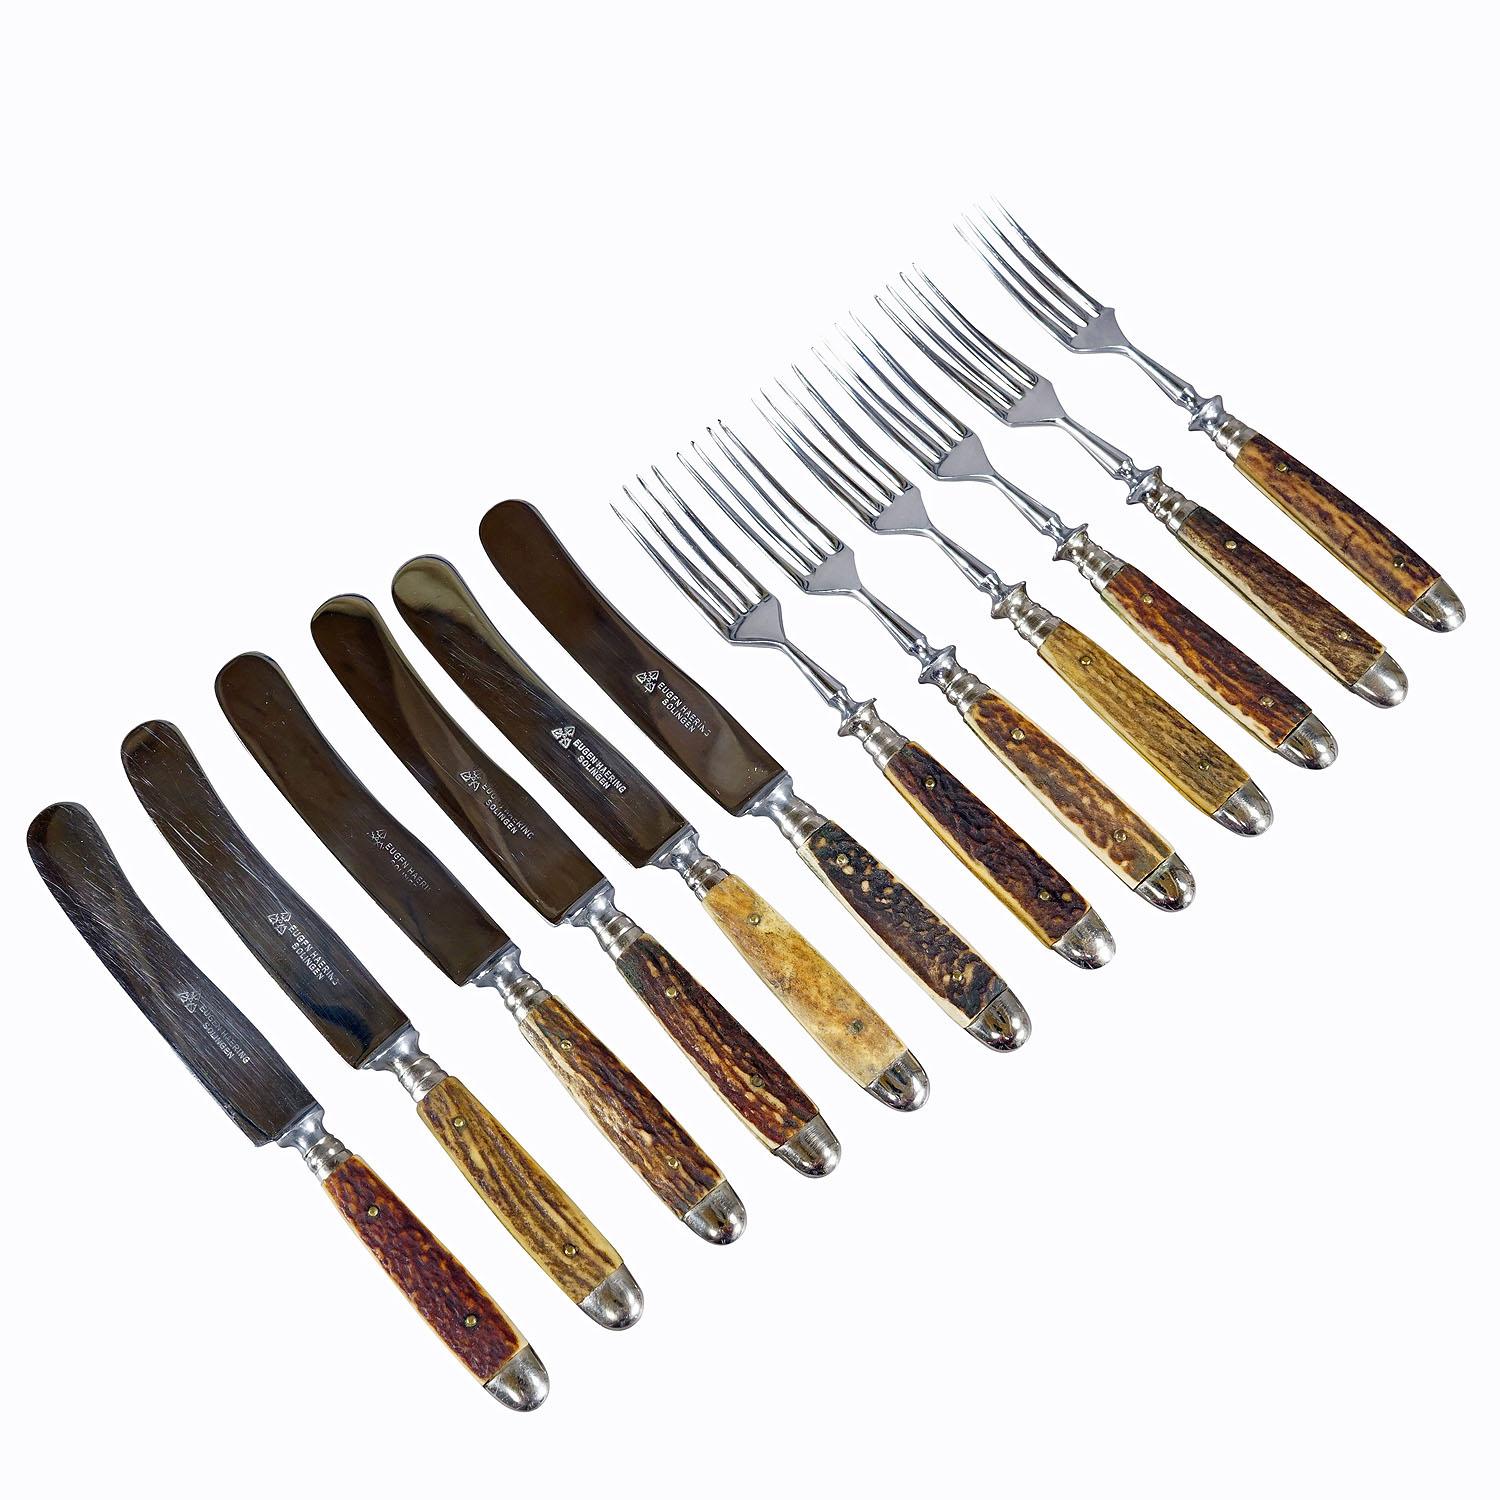 Service de table antique en acier inoxydable et en Horn 12 Pieces, Allemagne 1930s

Service de table rustique composé de six couteaux et six fourchettes. Les poignées sont en corne de cerf véritable. Les lames sont en acier inoxydable. L'ensemble a